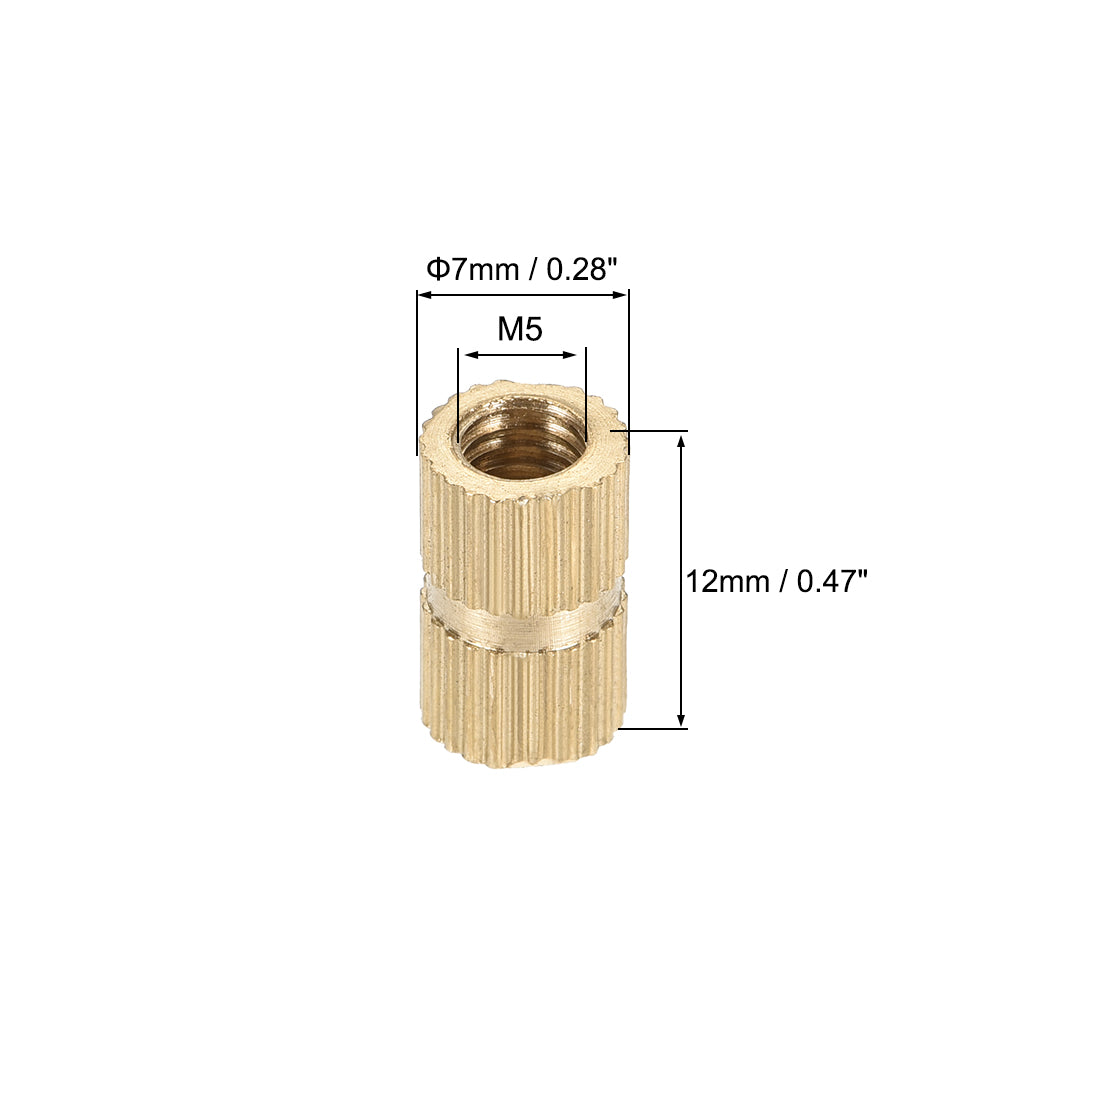 uxcell Uxcell Knurled Insert Nuts, M5 x 12mm(L) x 7mm(OD) Female Thread Brass Embedment Assortment Kit, 100 Pcs